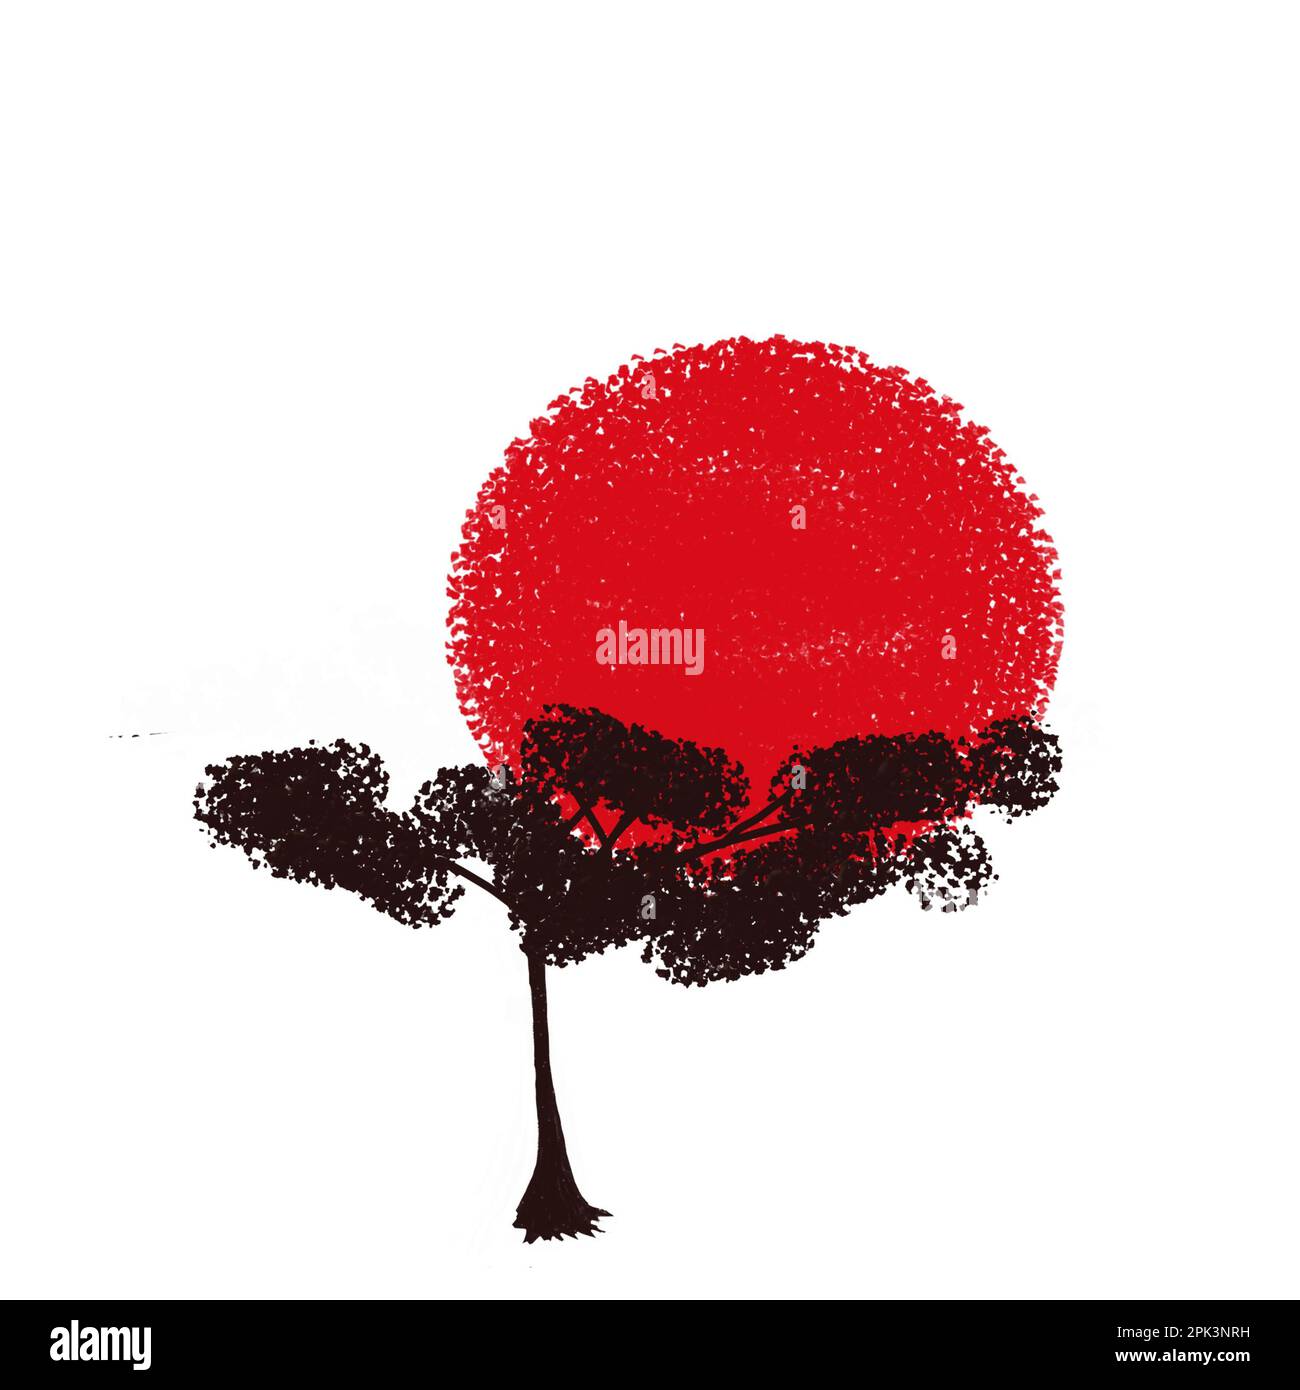 Un cercle rouge dans le style grunge sur un fond blanc représentant le soleil et les cerisiers en fleurs. Le drapeau japonais est un symbole du soleil levant. Banque D'Images